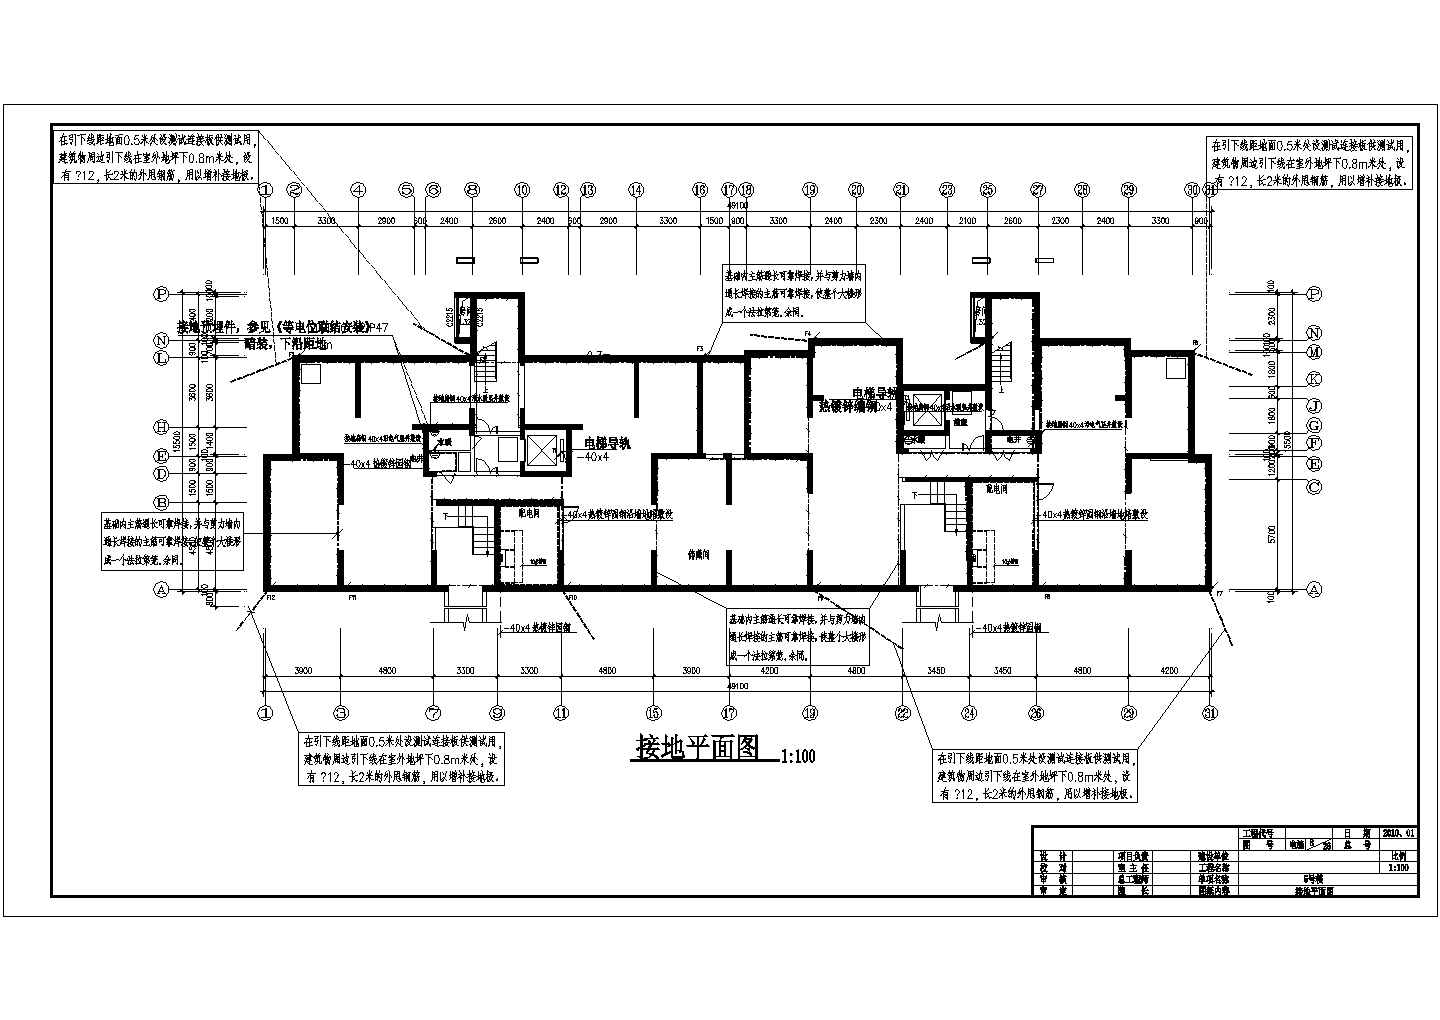 一栋12层的居民住宅楼电气设计施工图